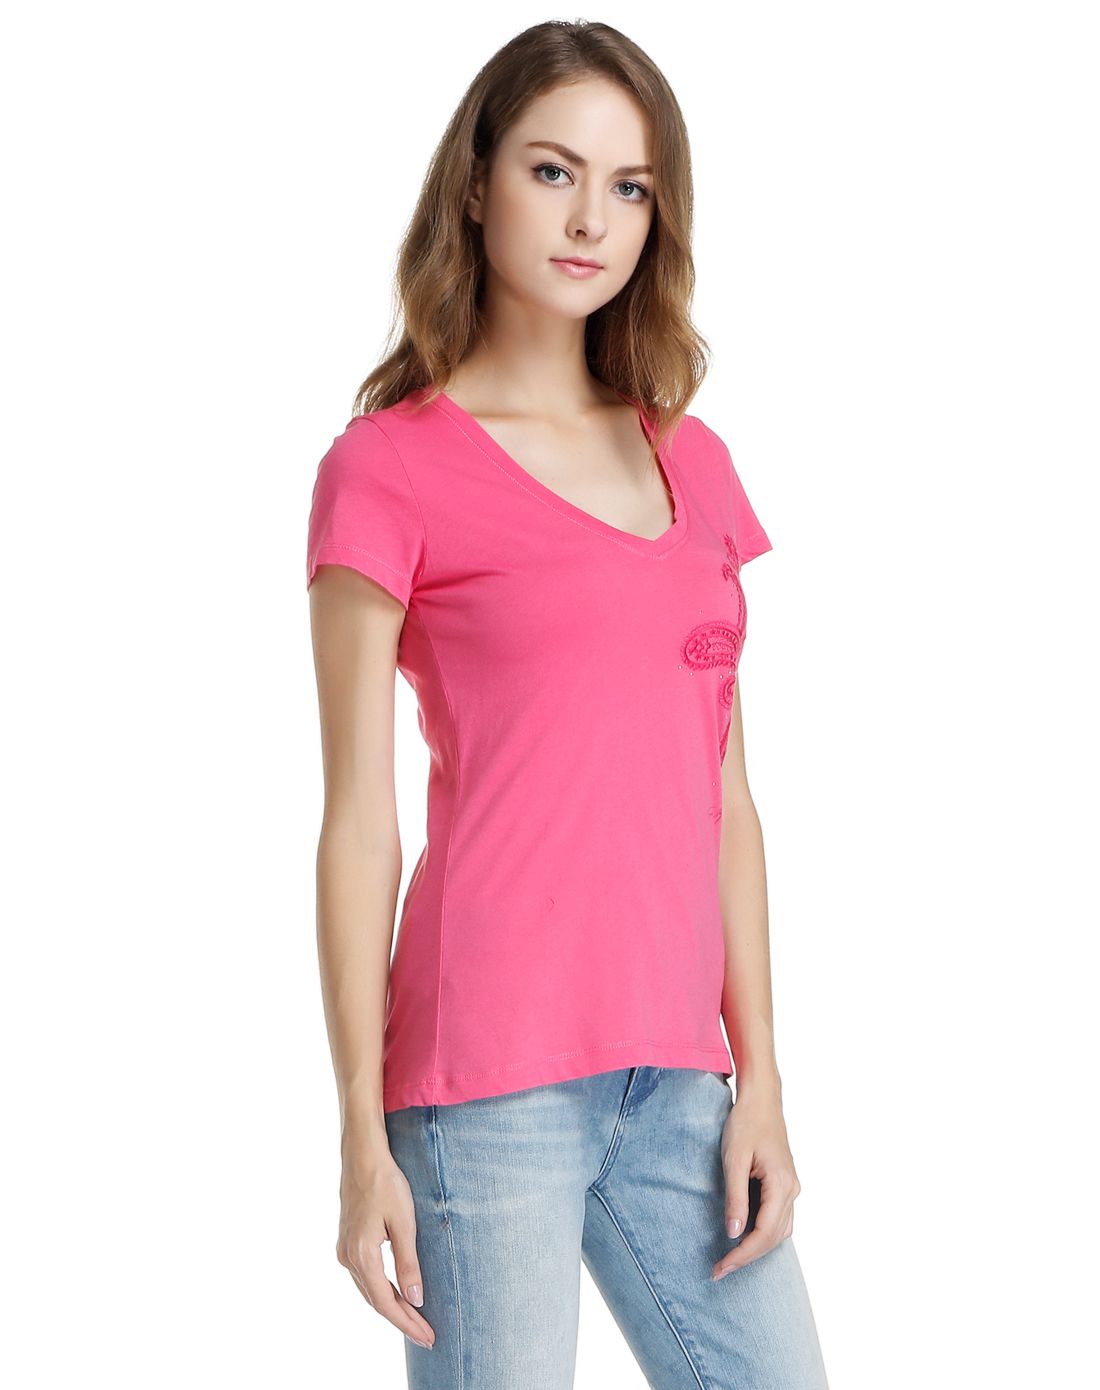 粉红色休闲舒适简洁短袖t恤